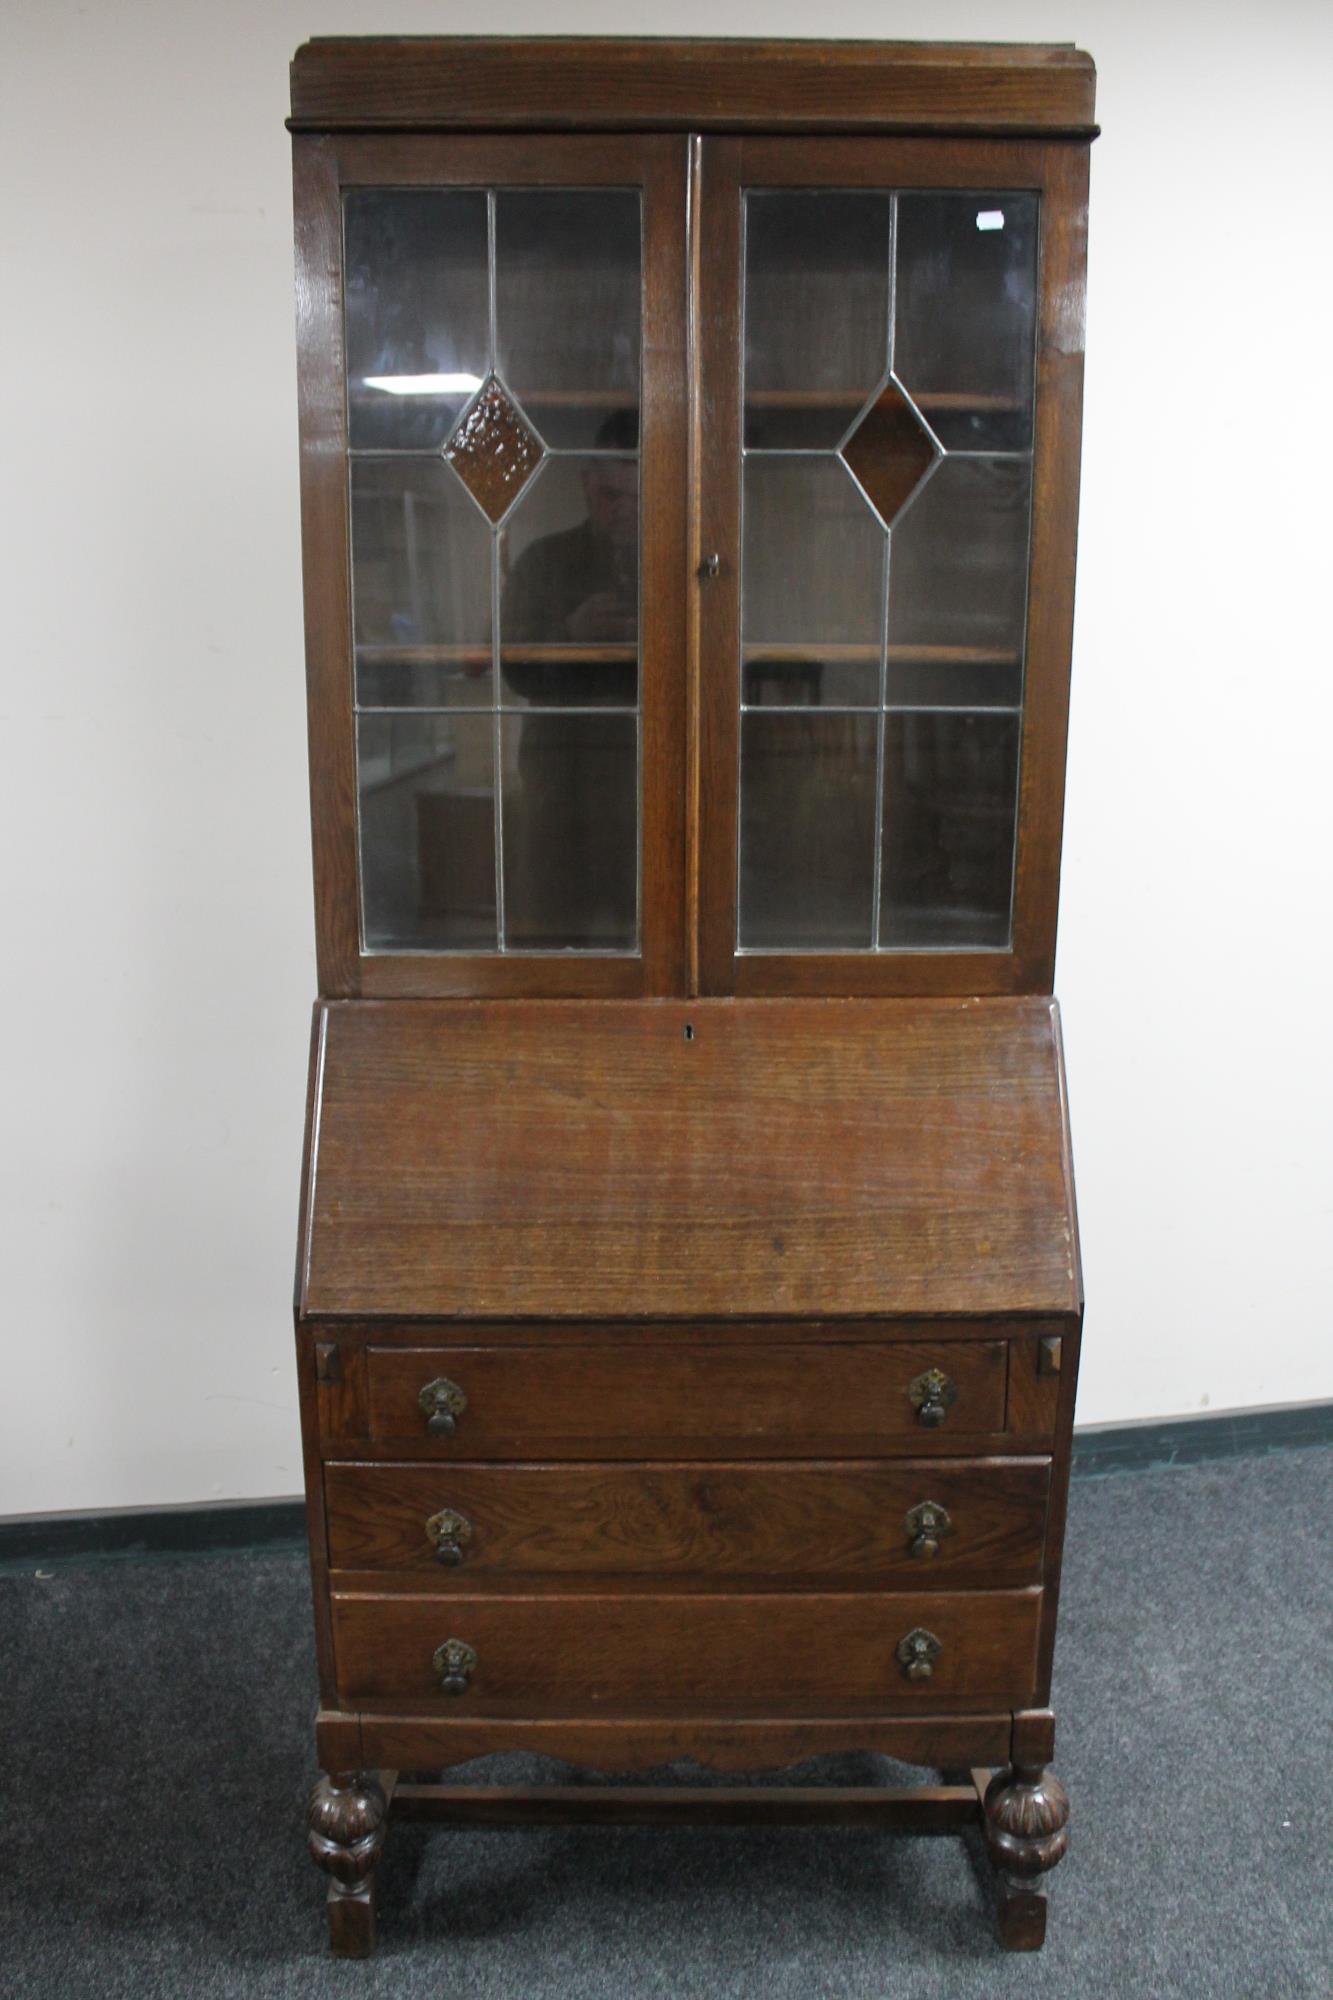 An early 20th century oak leaded glass door bureau bookcase